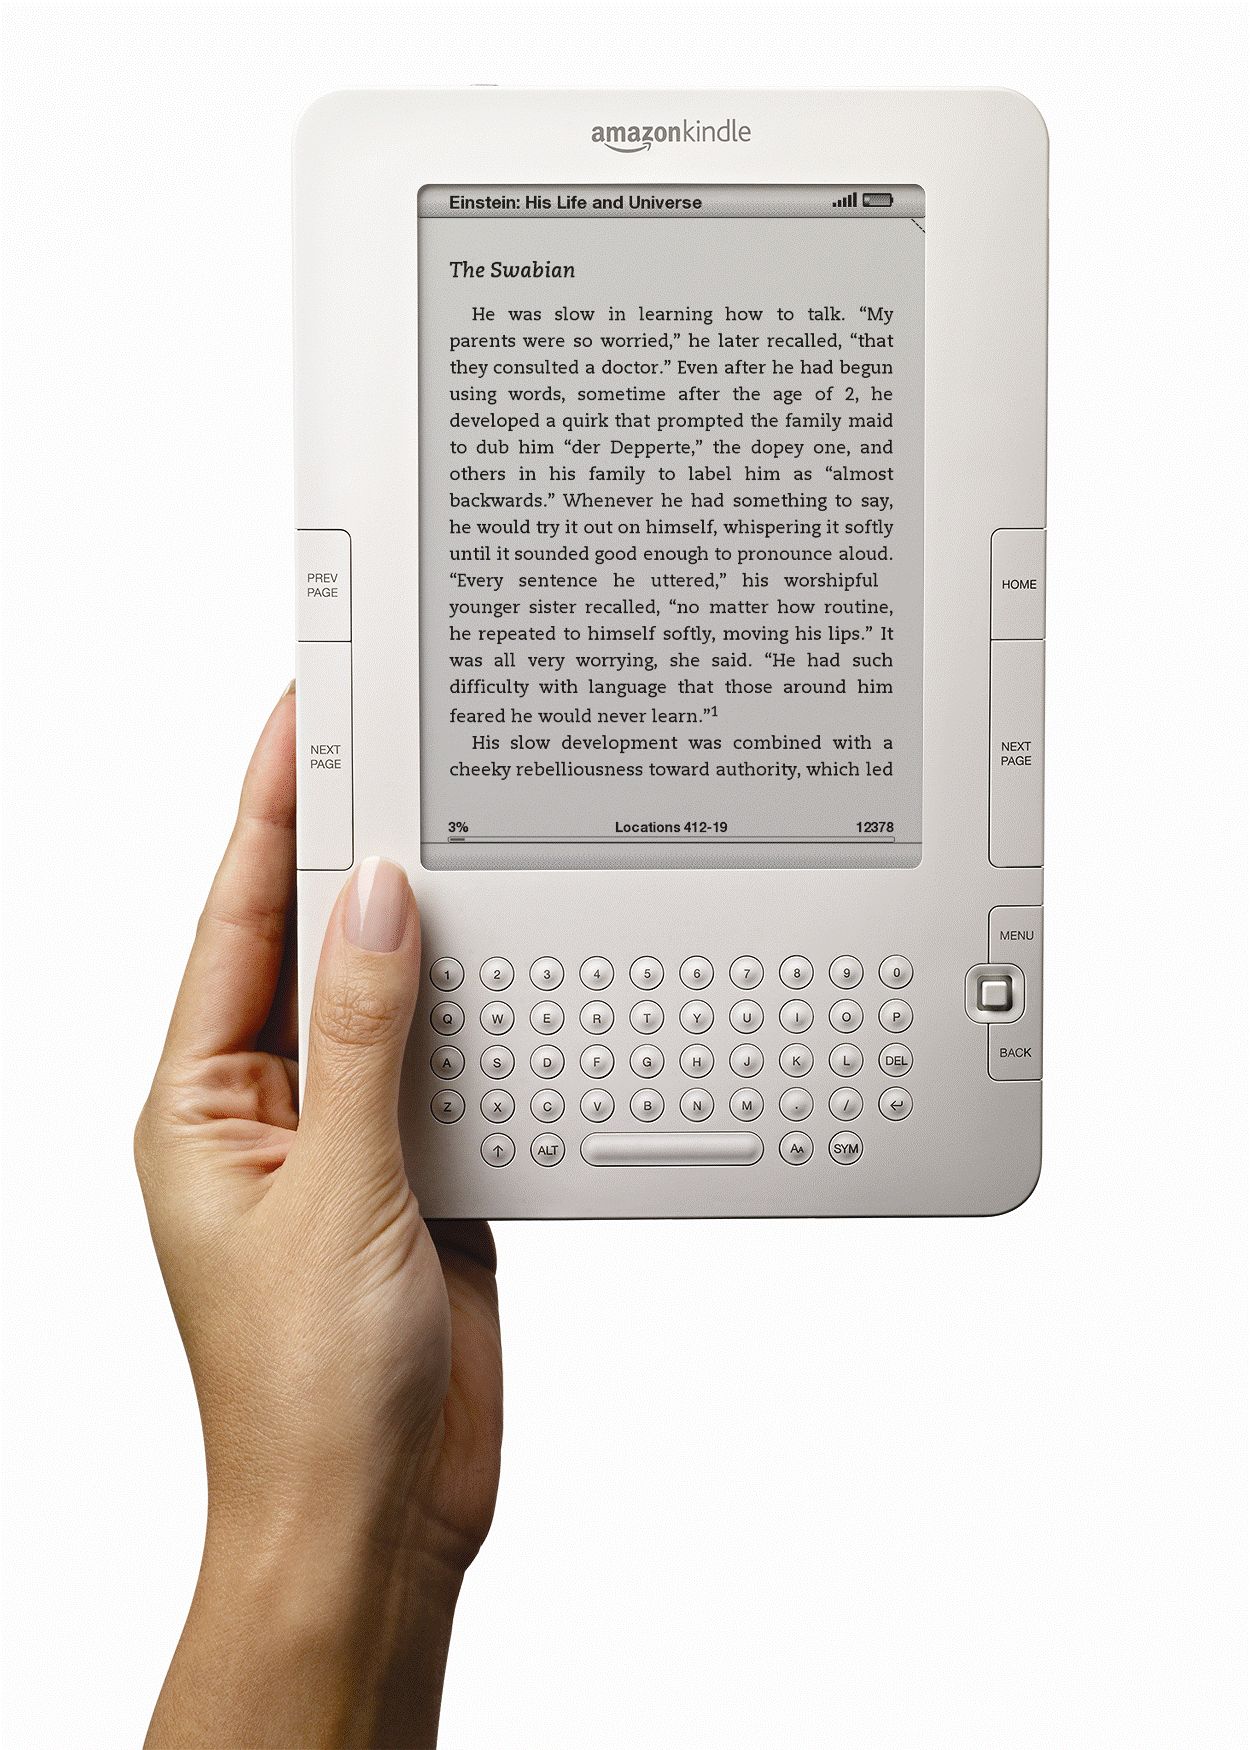 Le Kindle, un cadeau assez fréquent sous les sapins selon Amazon. © DR